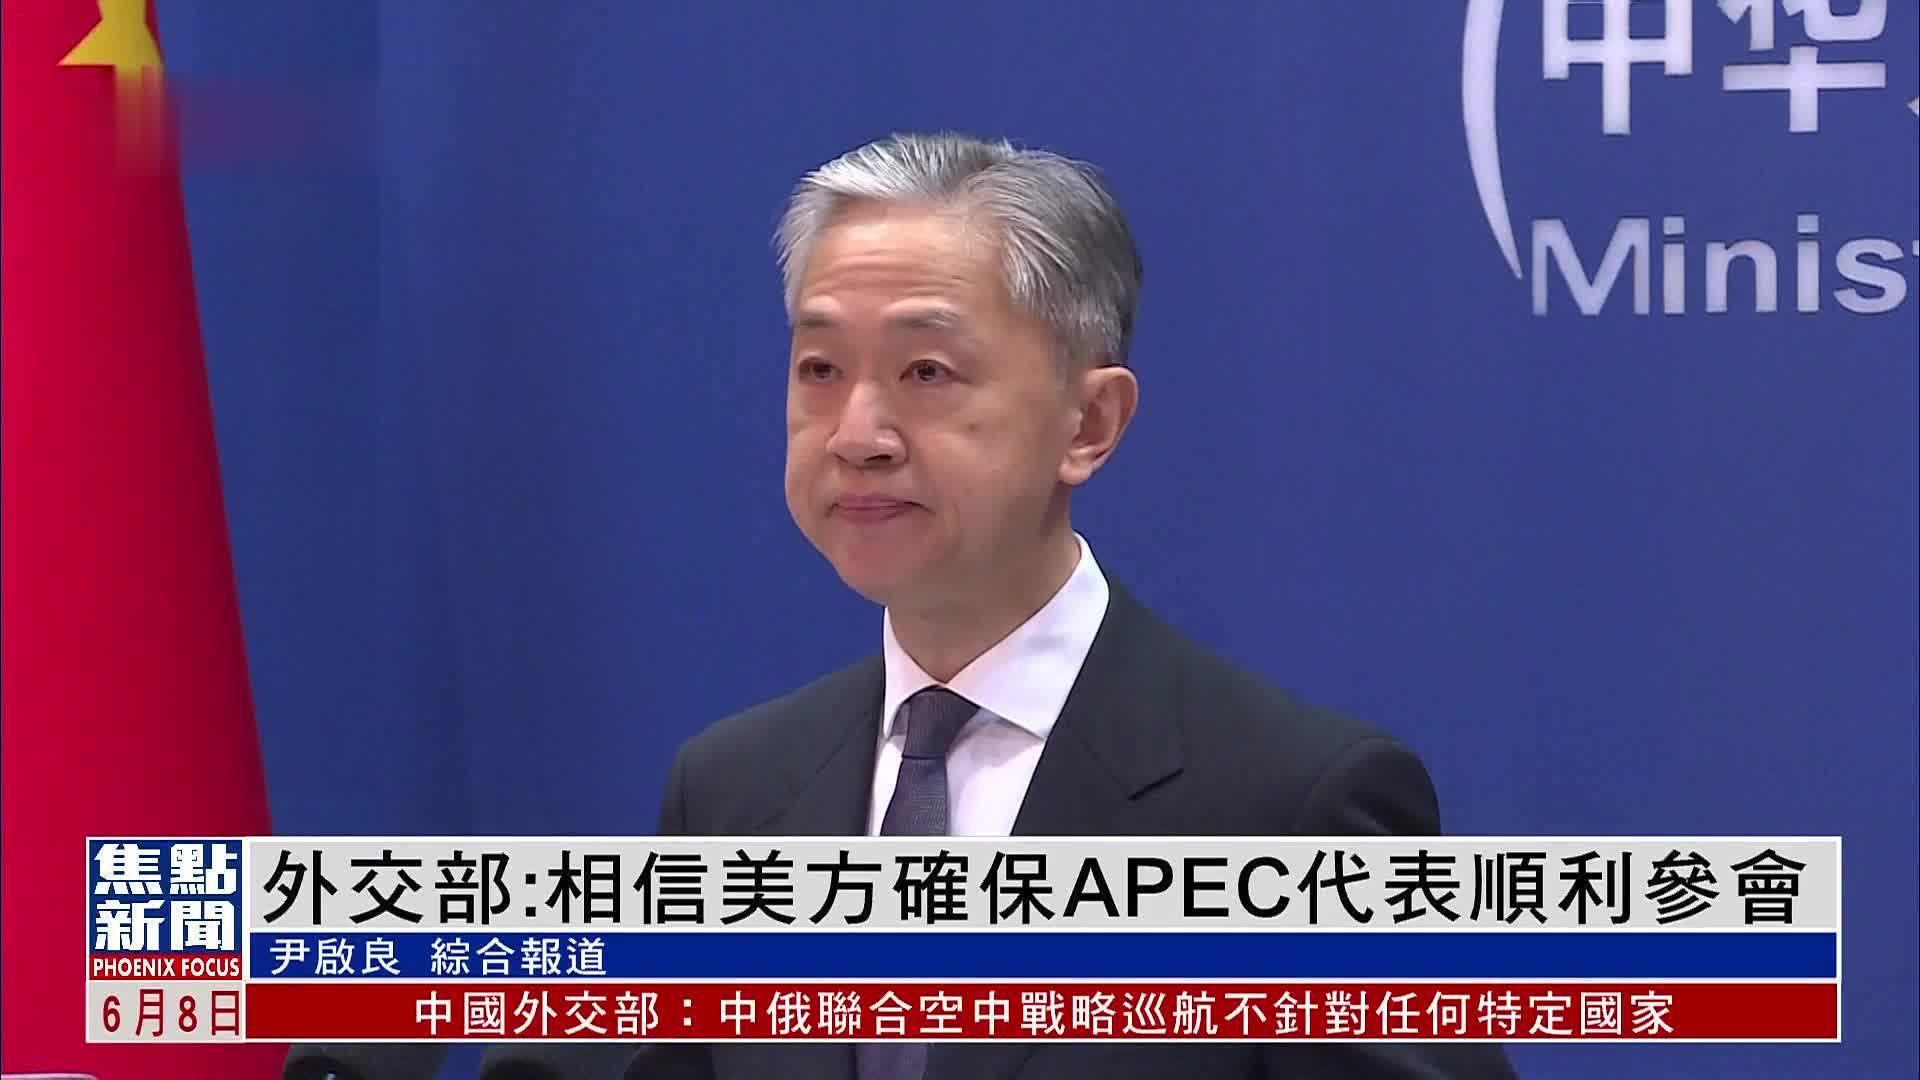 中国外交部：相信美方会履行承诺 确保APEC代表顺利参会